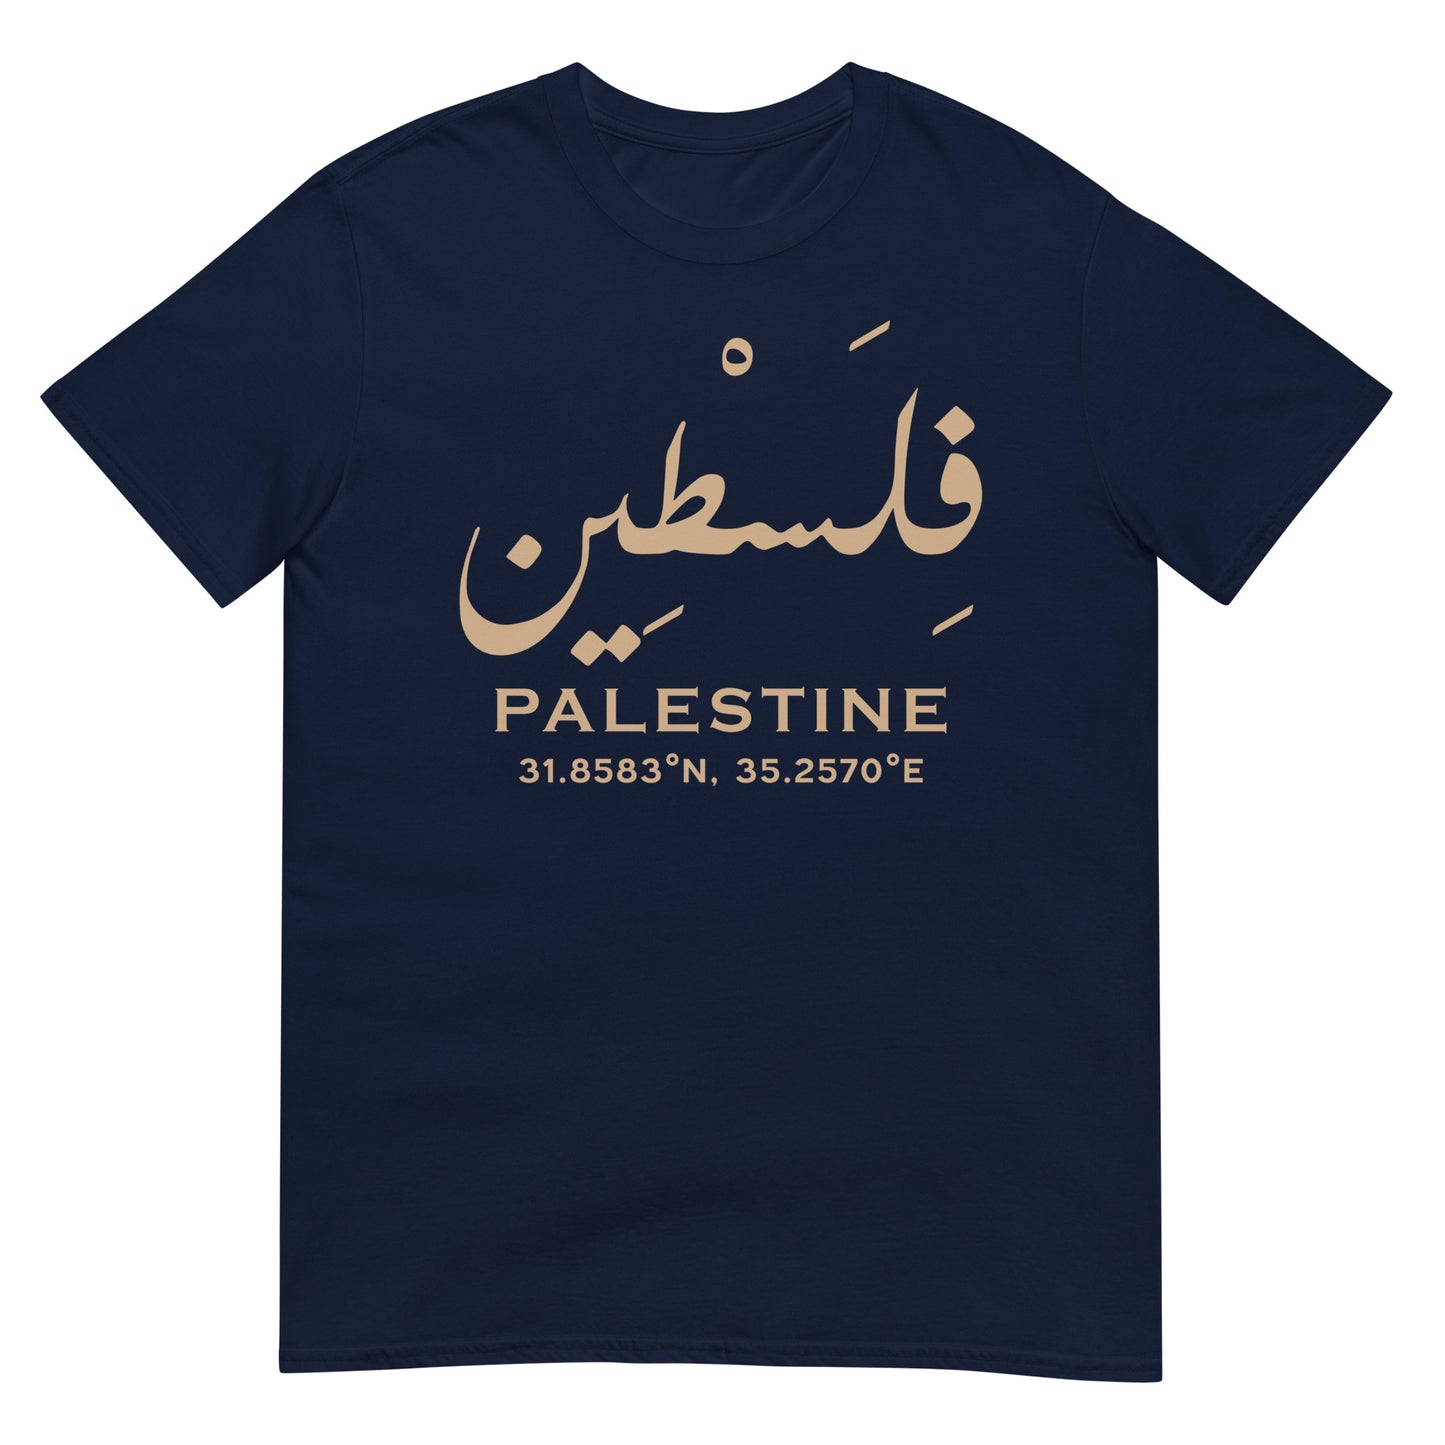 Palestine - Écriture arabe et localisation géographique T-shirt unisexe